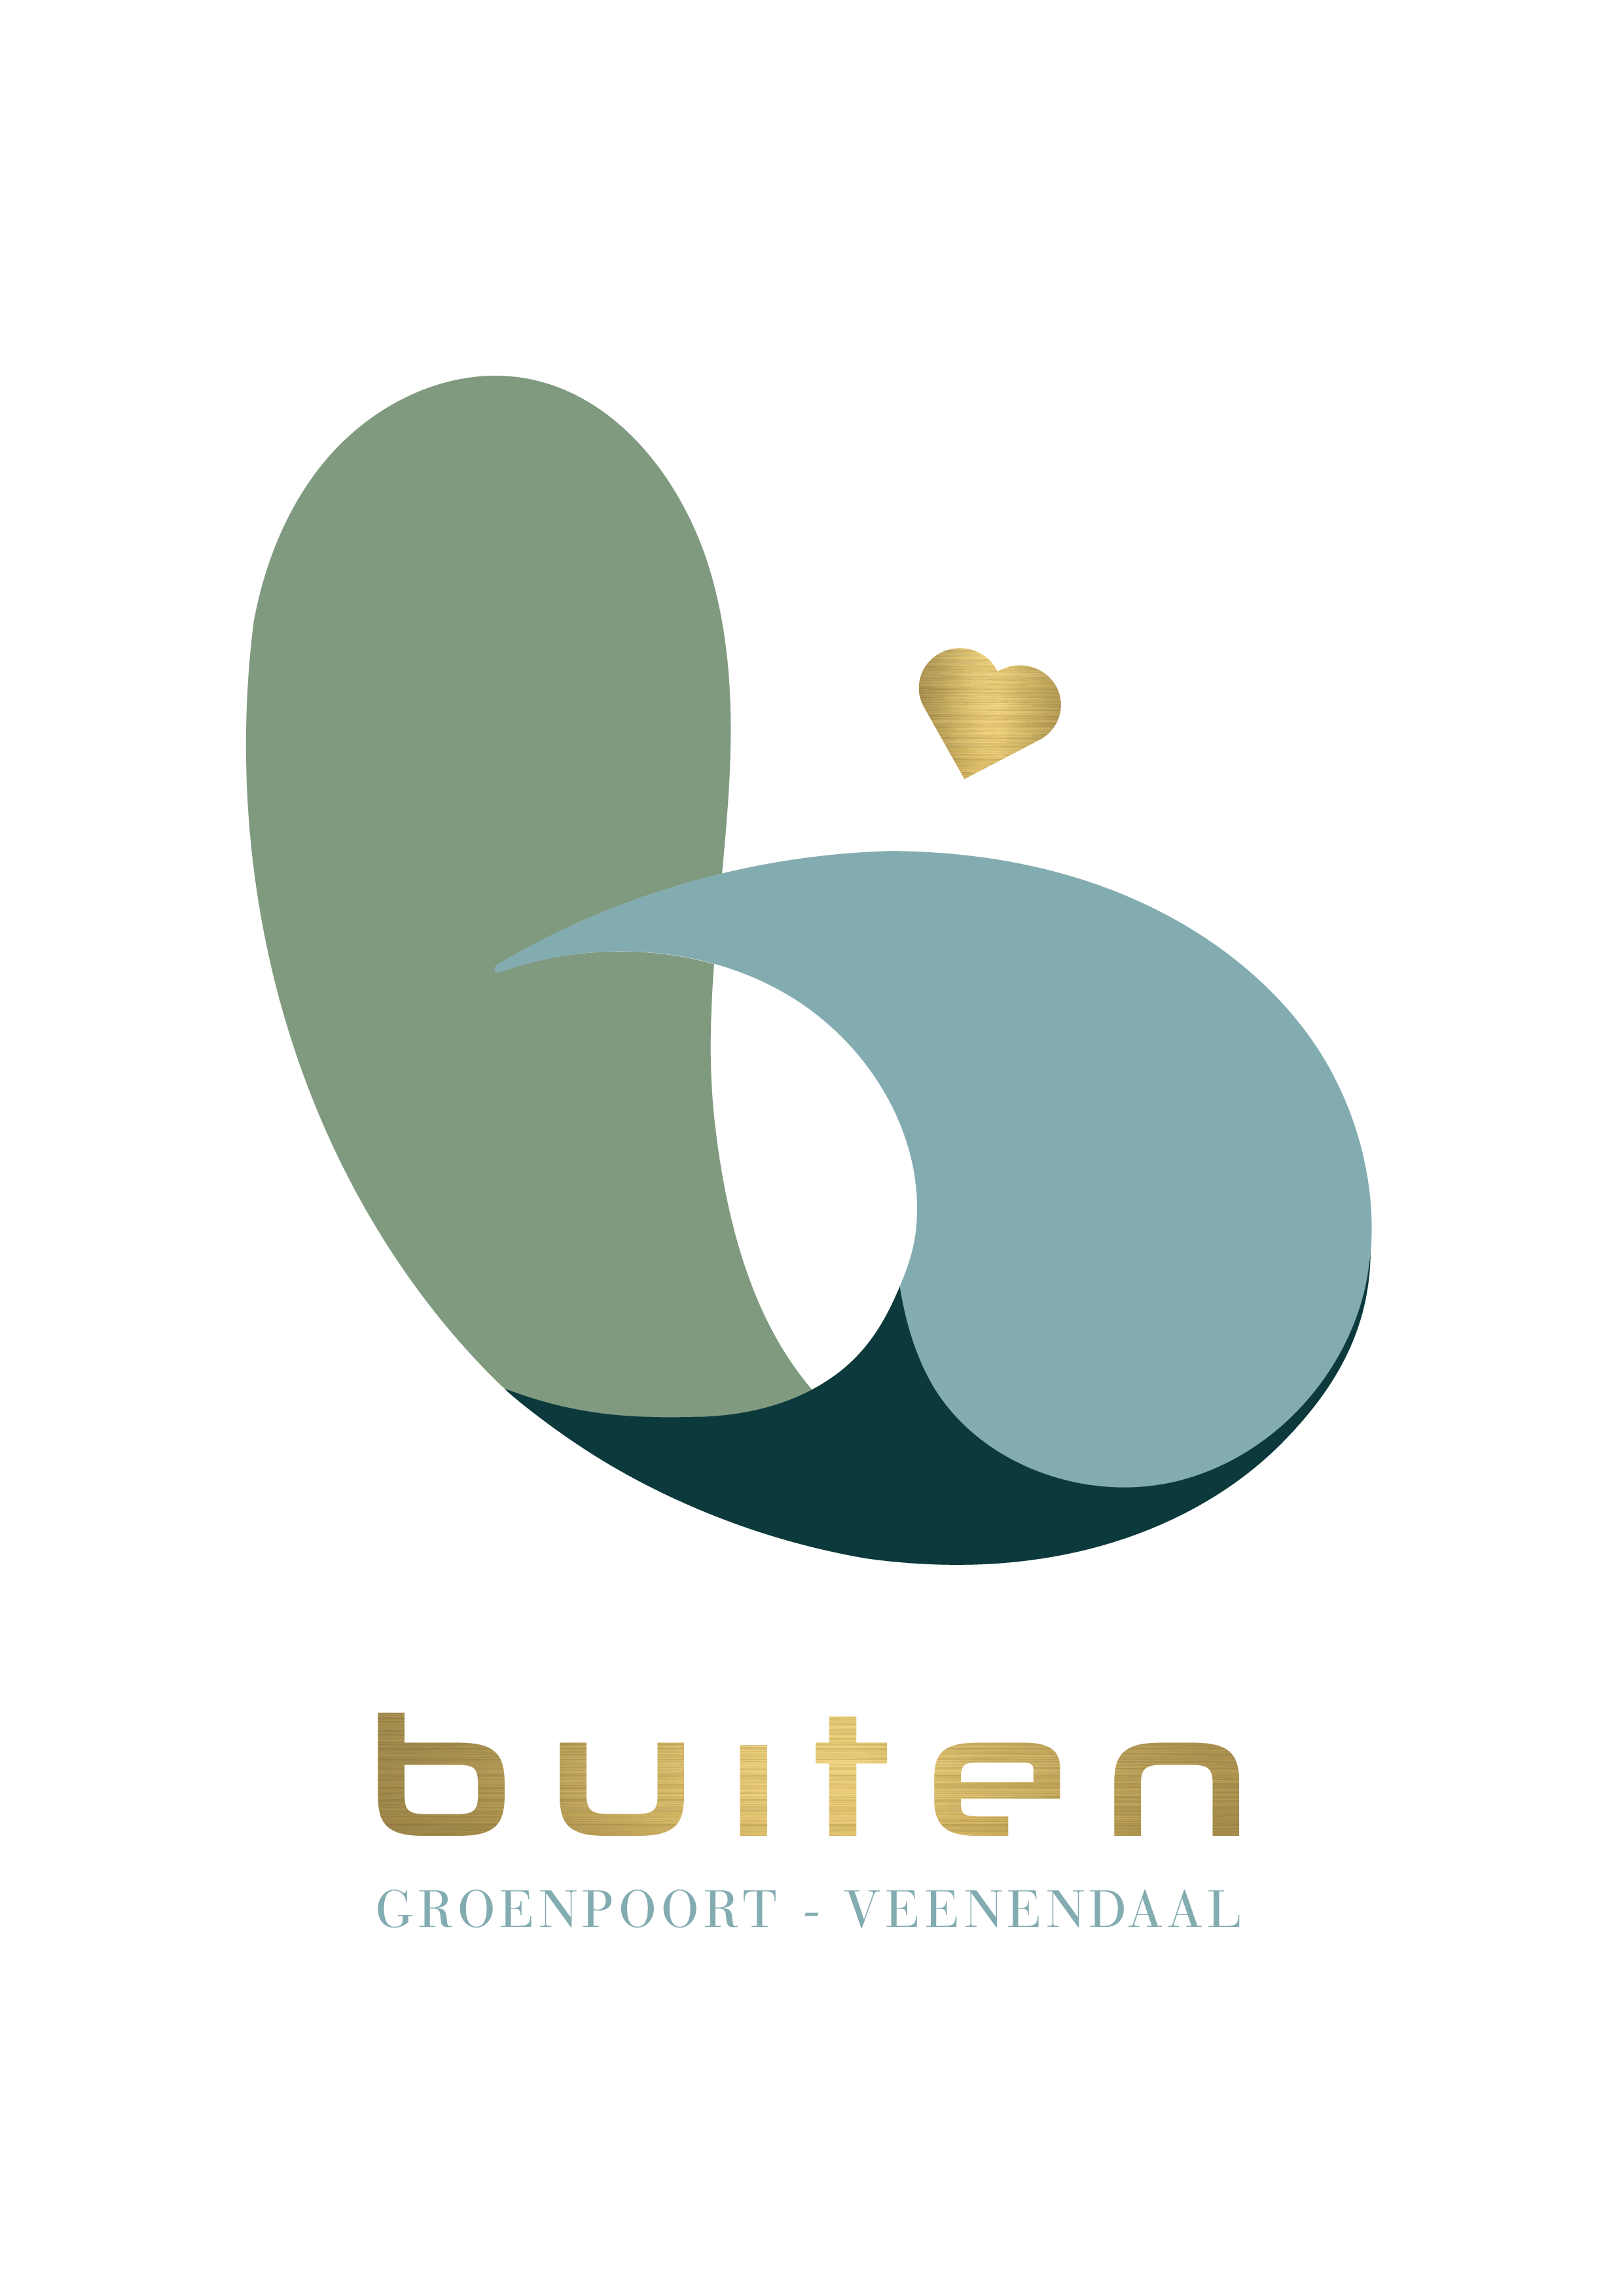 Veenendaal BUITEN - logo fullcolor